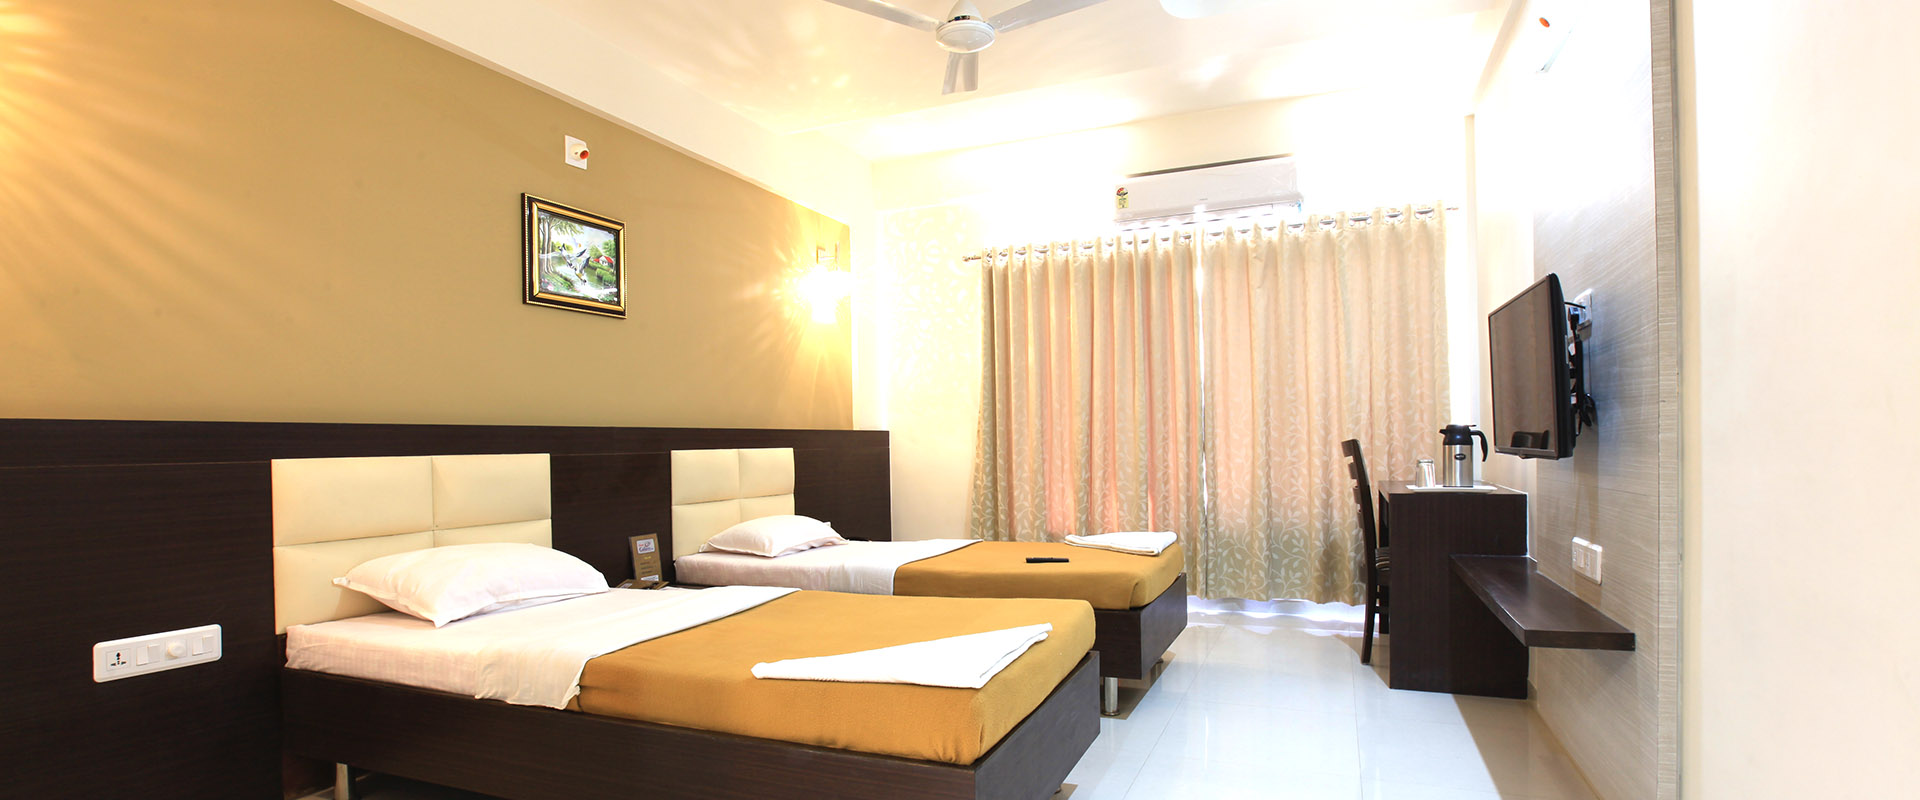 hotel gallexy inn gandhinagar , Best hotel in gandhinagar